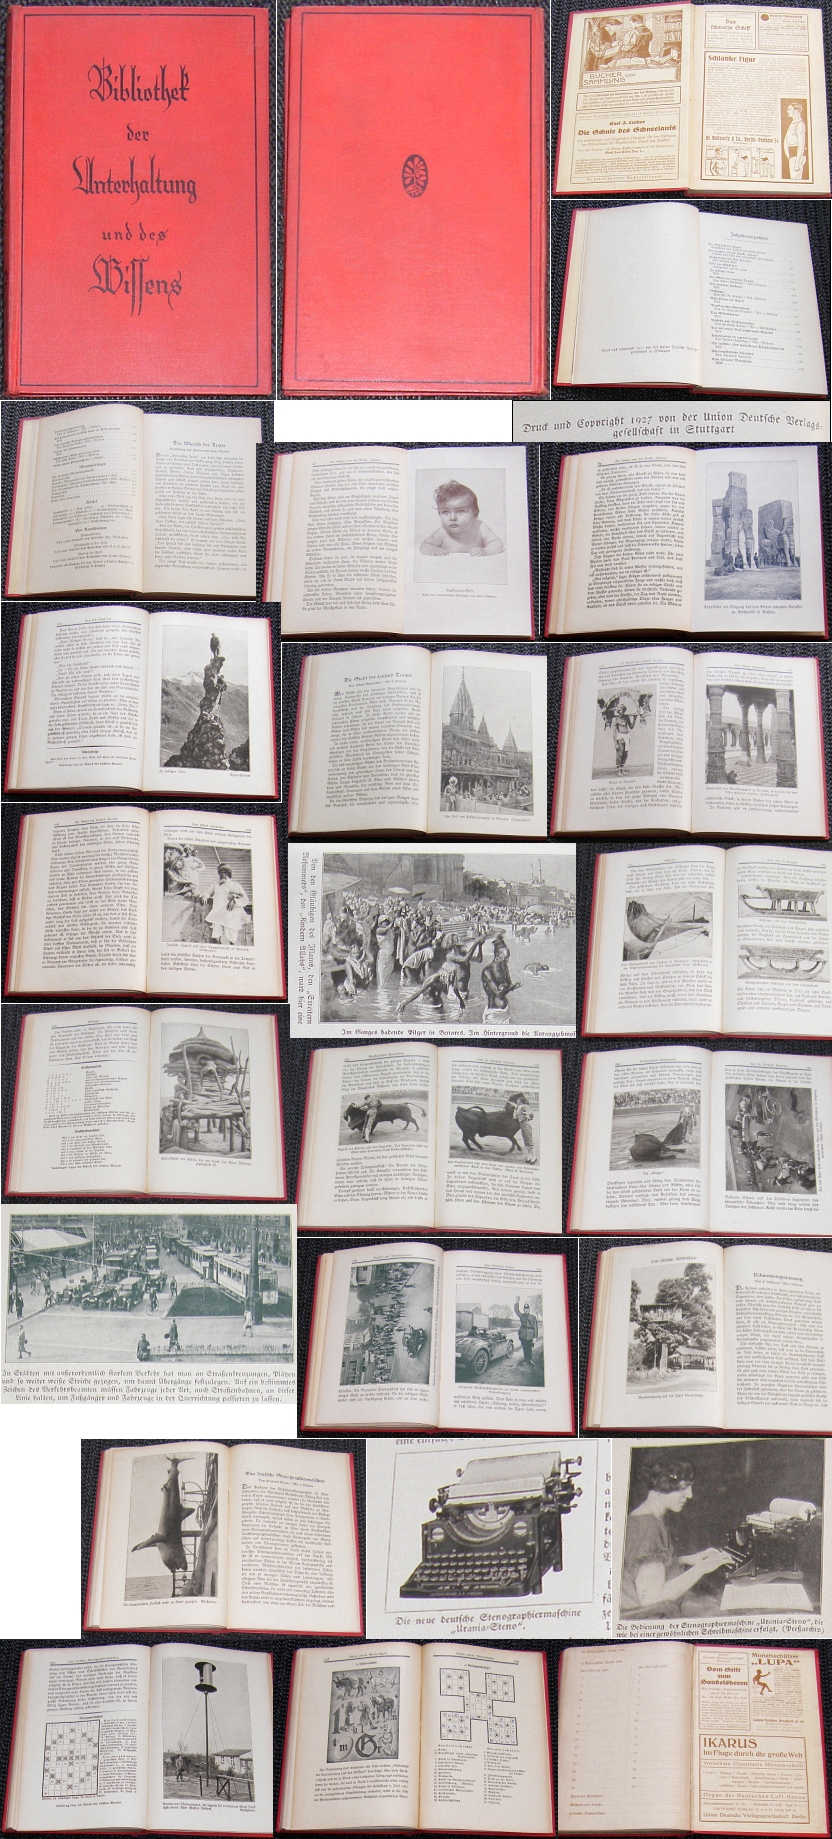 Buch: Bibliothek der Unterhaltung und des Wissens, 5. Band/1927 - 9,00 Eur